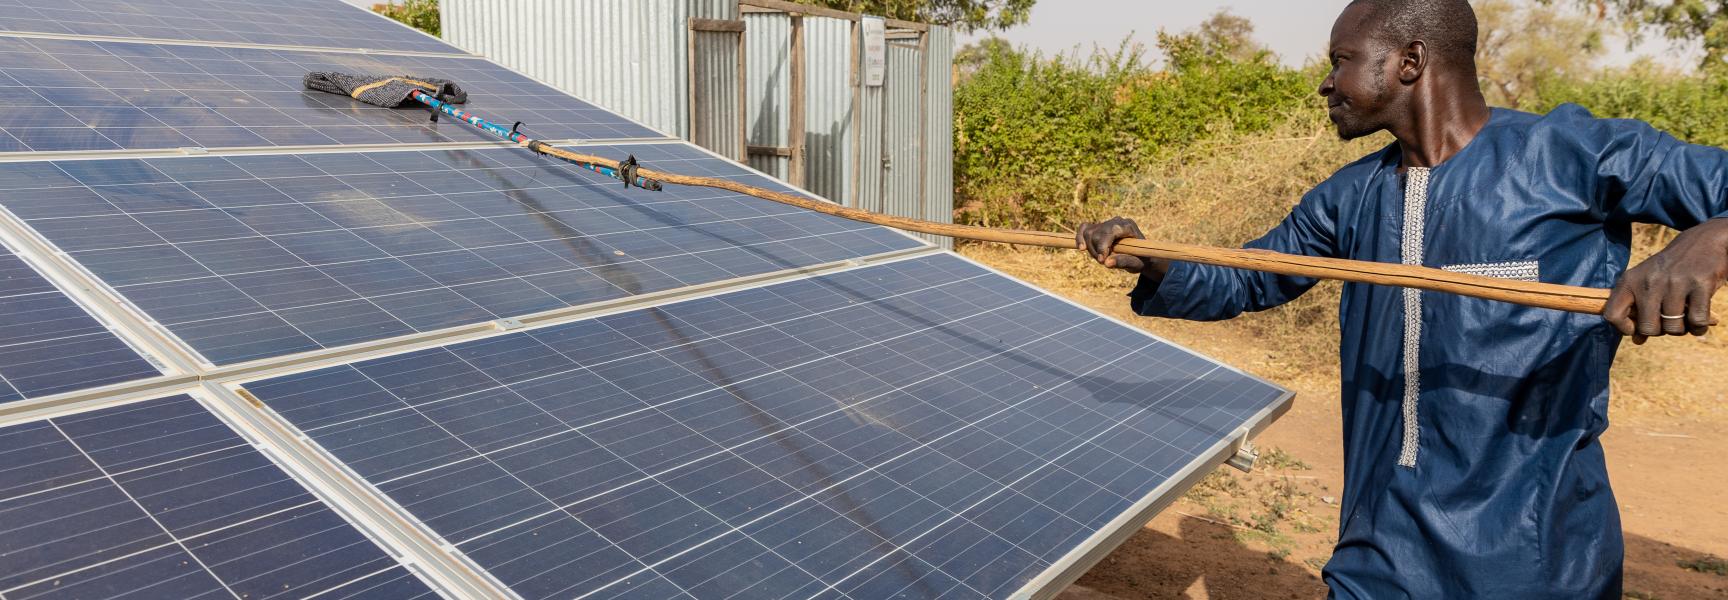 Hombre limpiando un panel solar en Mali